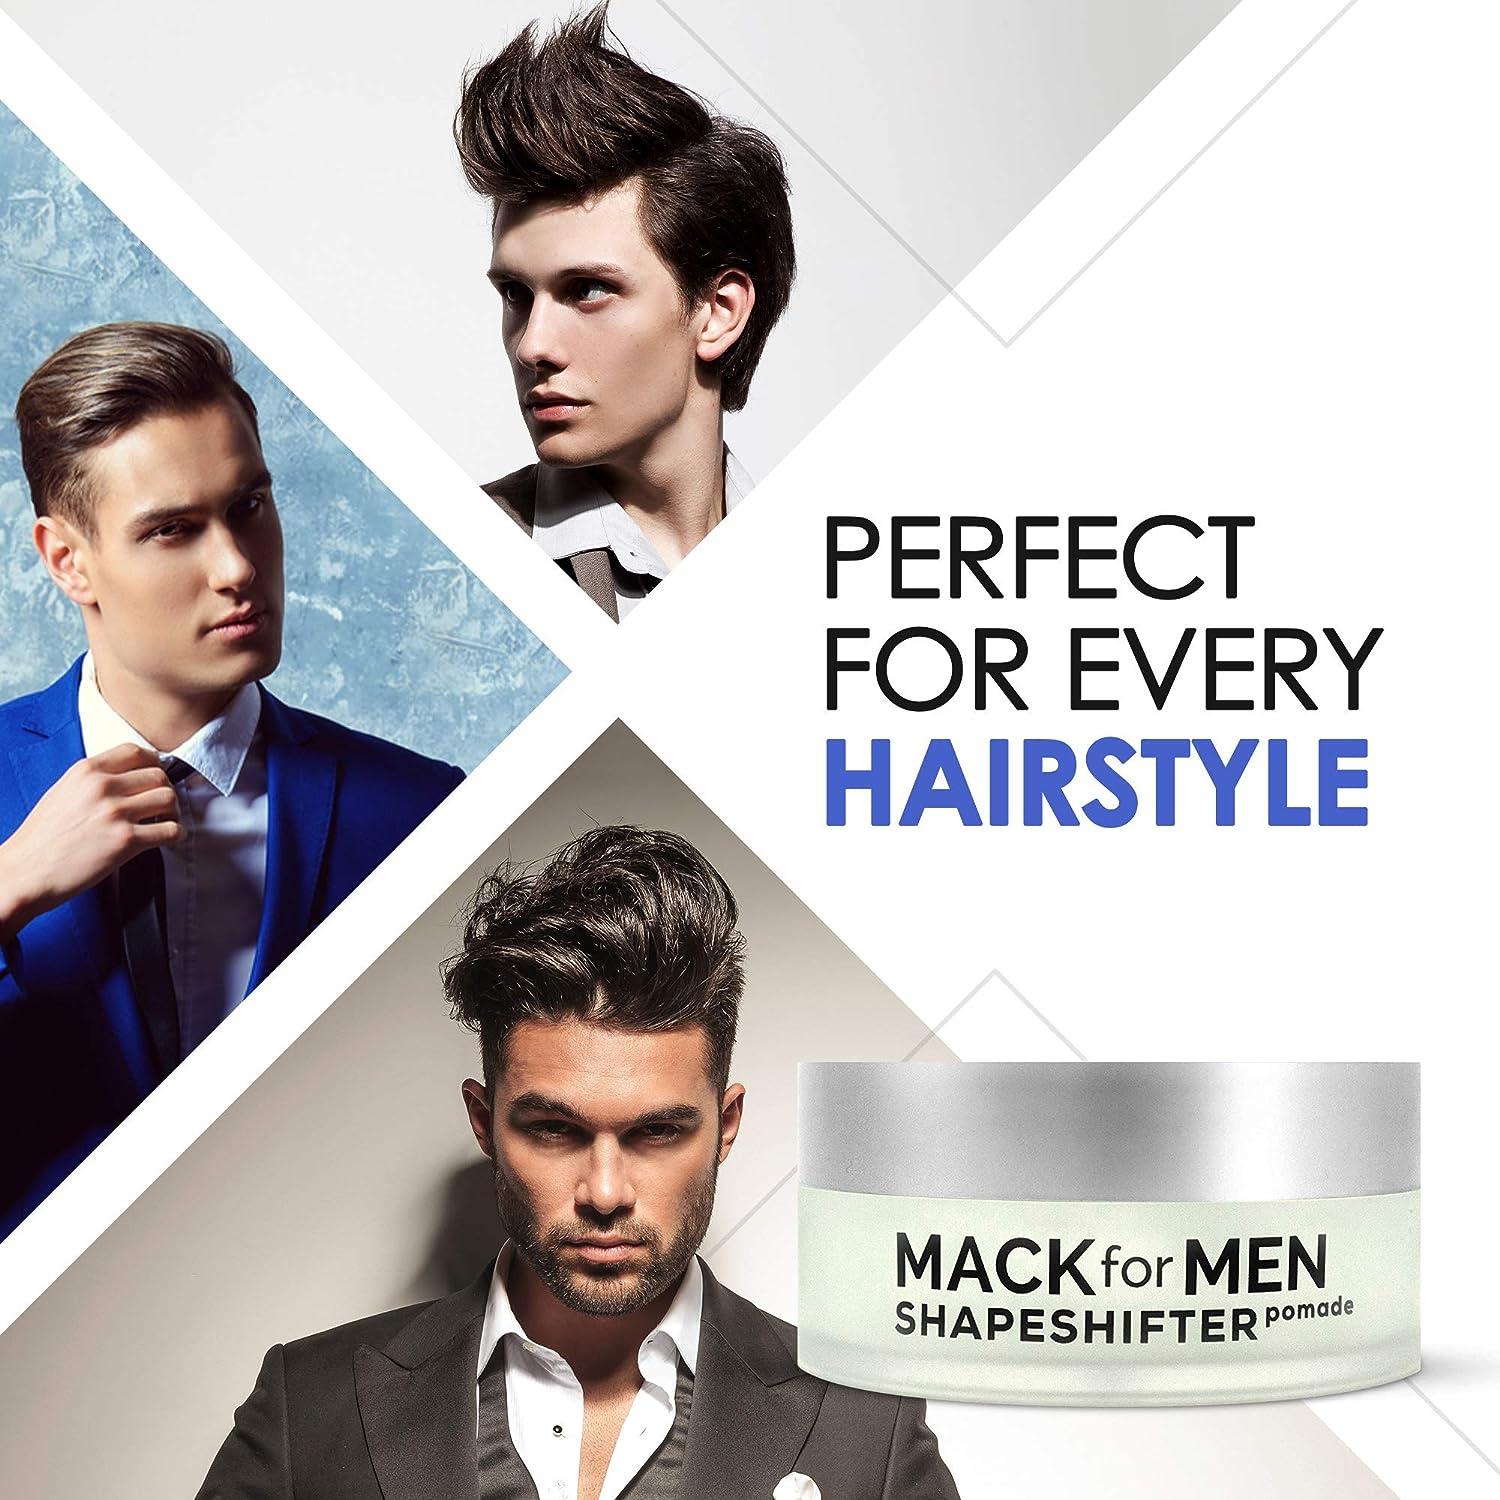 Mack for Men ShapeShifter Premium Hair Pomade for Men Strong Hold